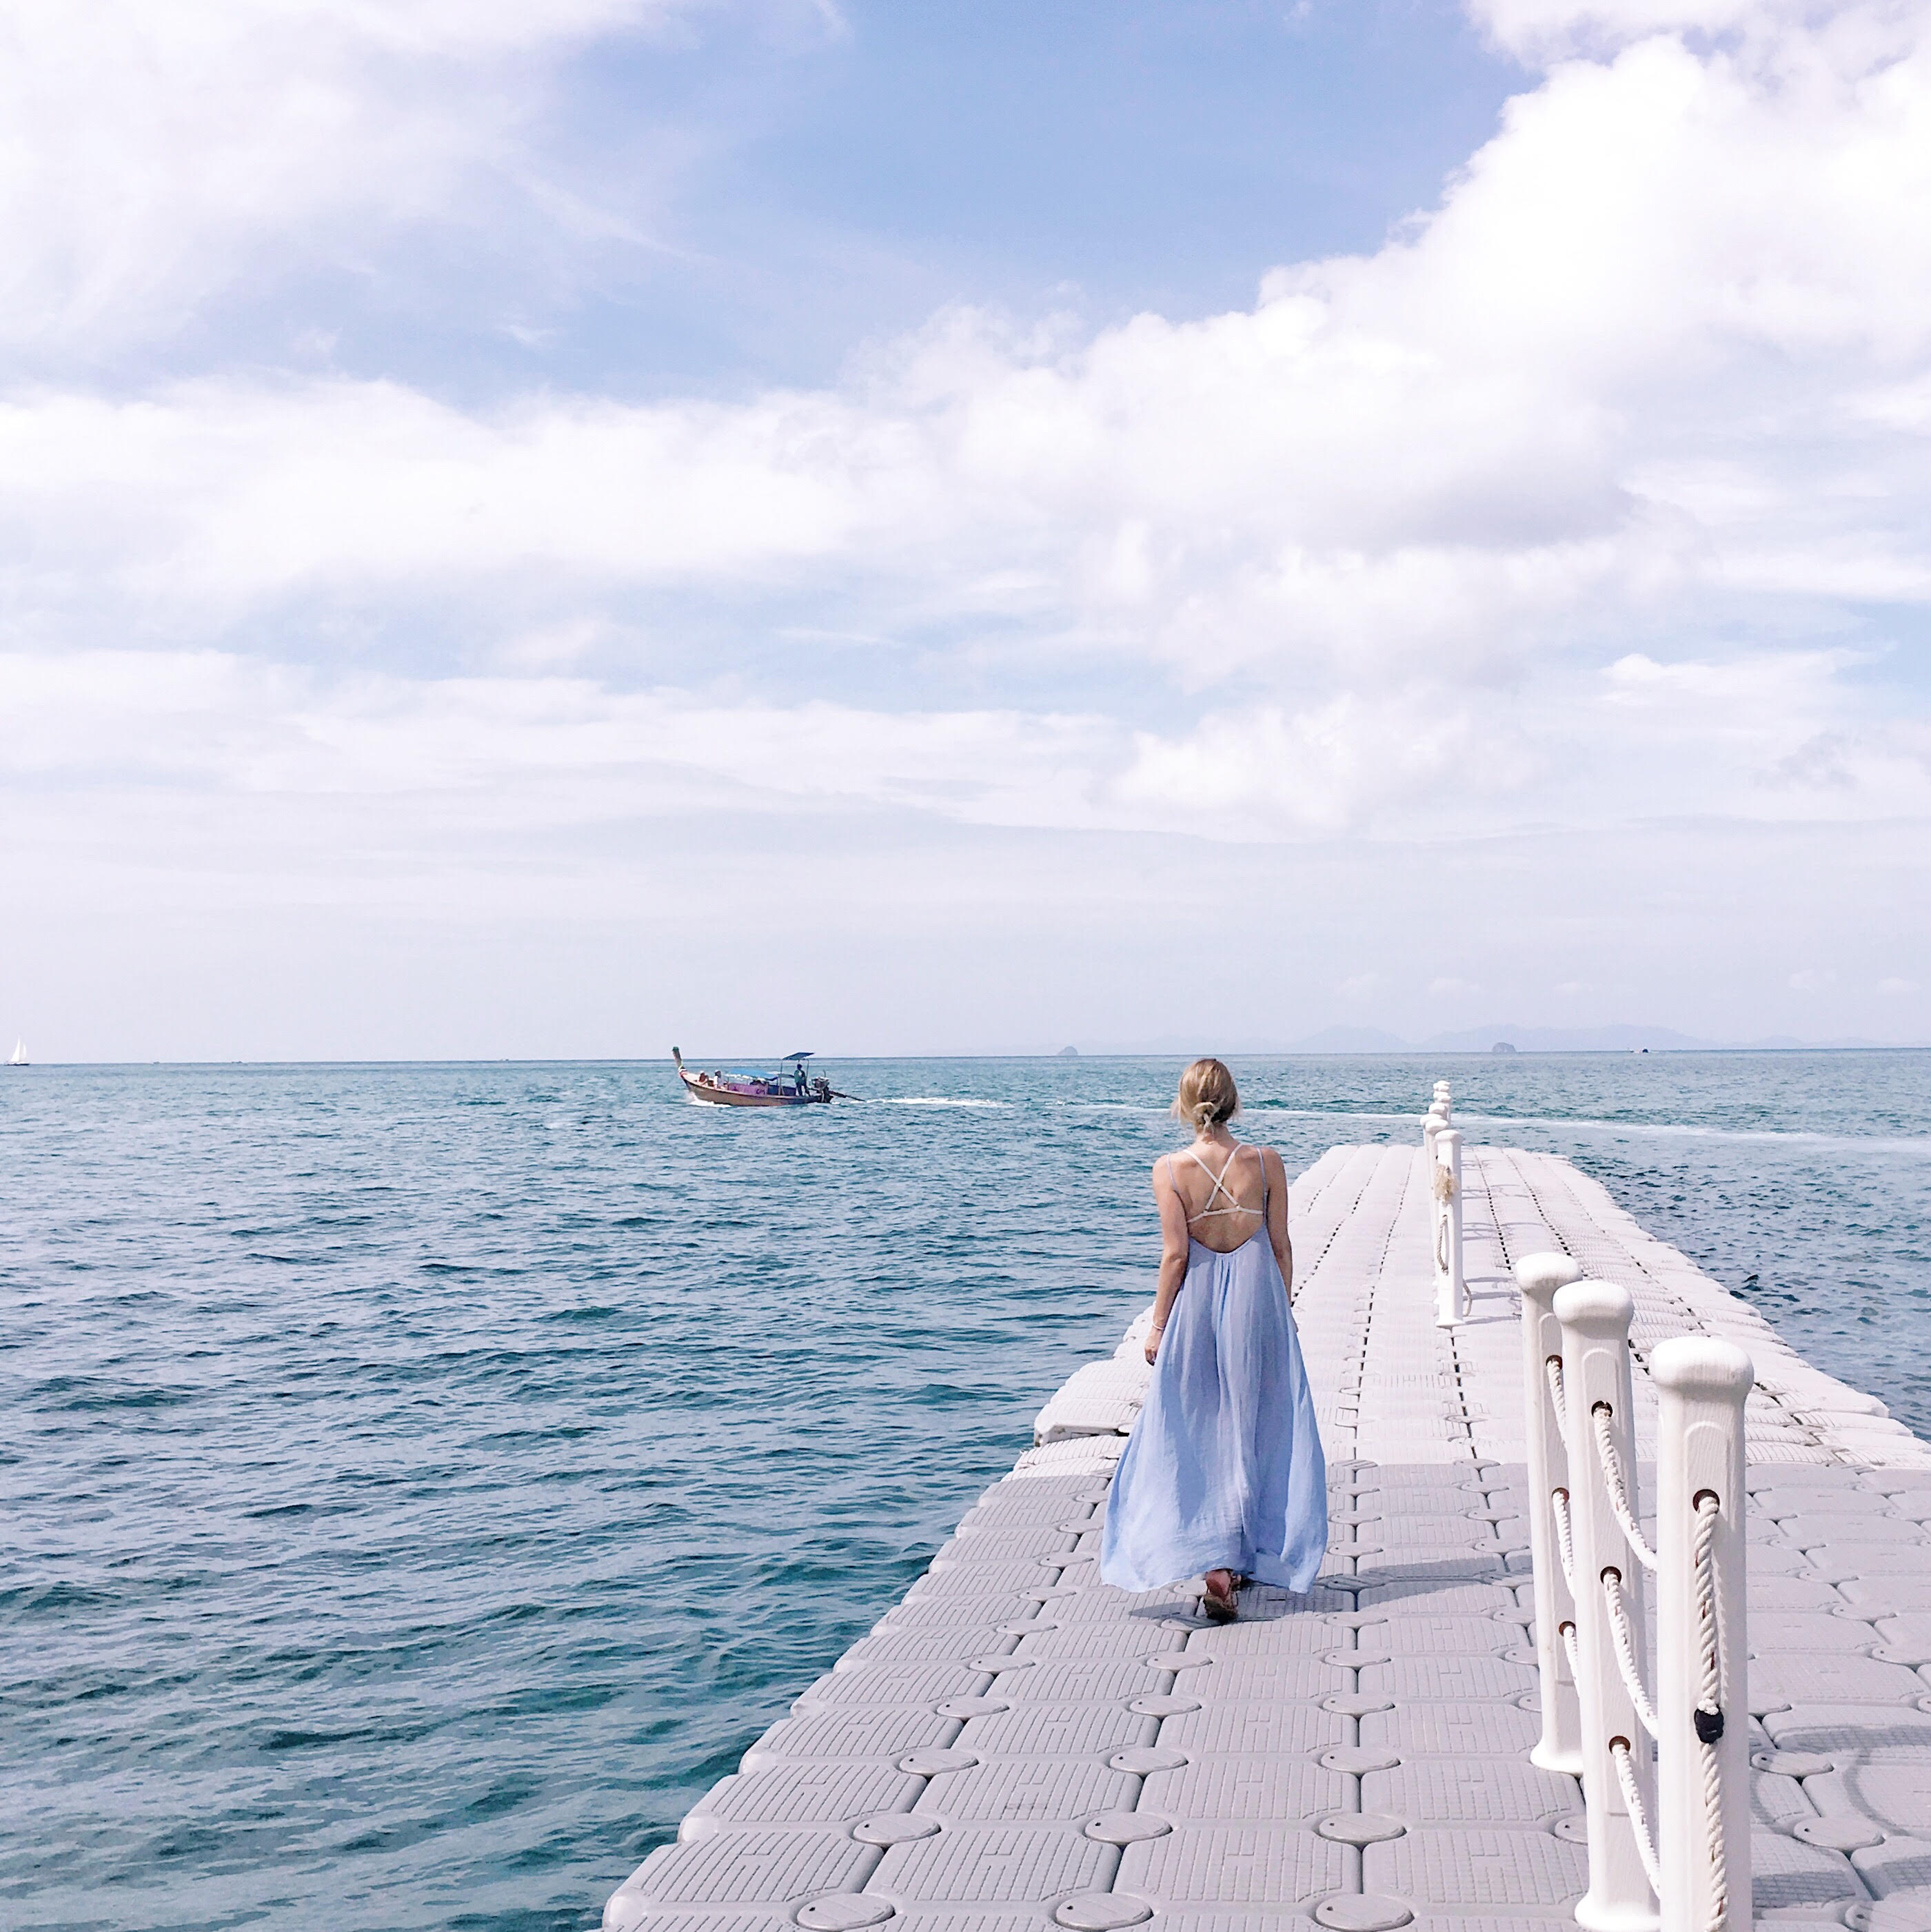 Blue beach maxi dress in Thailand at Krabi Beach. 